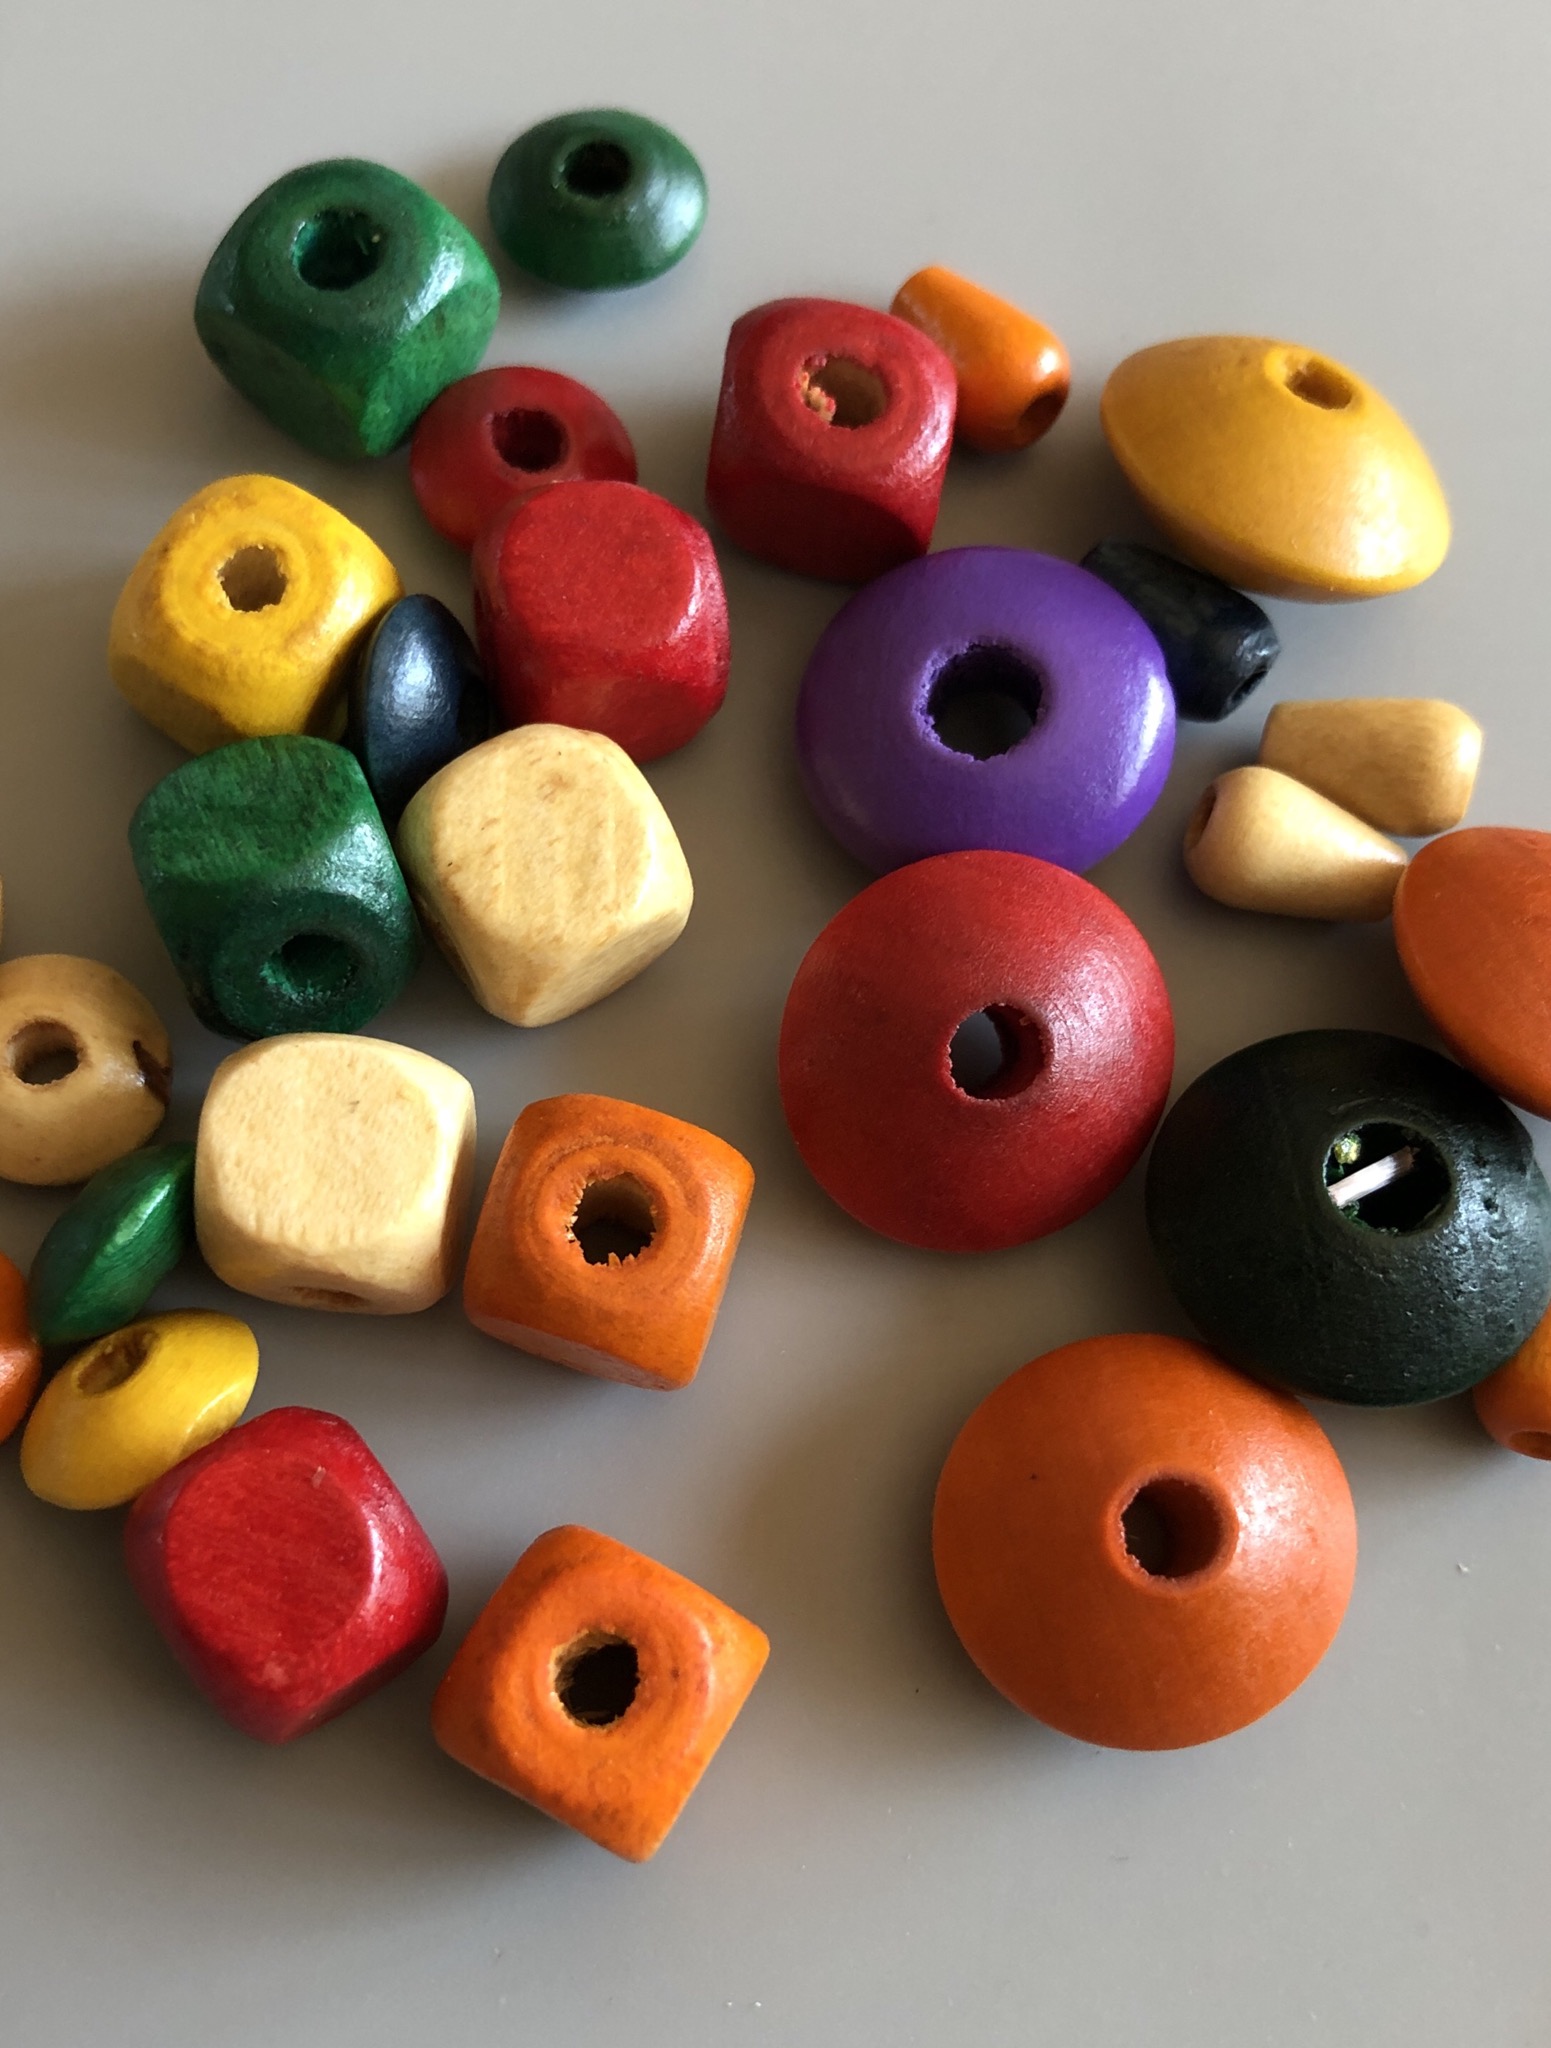 Bild zum Schritt 1 für das Bastel- und DIY-Abenteuer für Kinder: 'Farbige Perlen auswählen.'